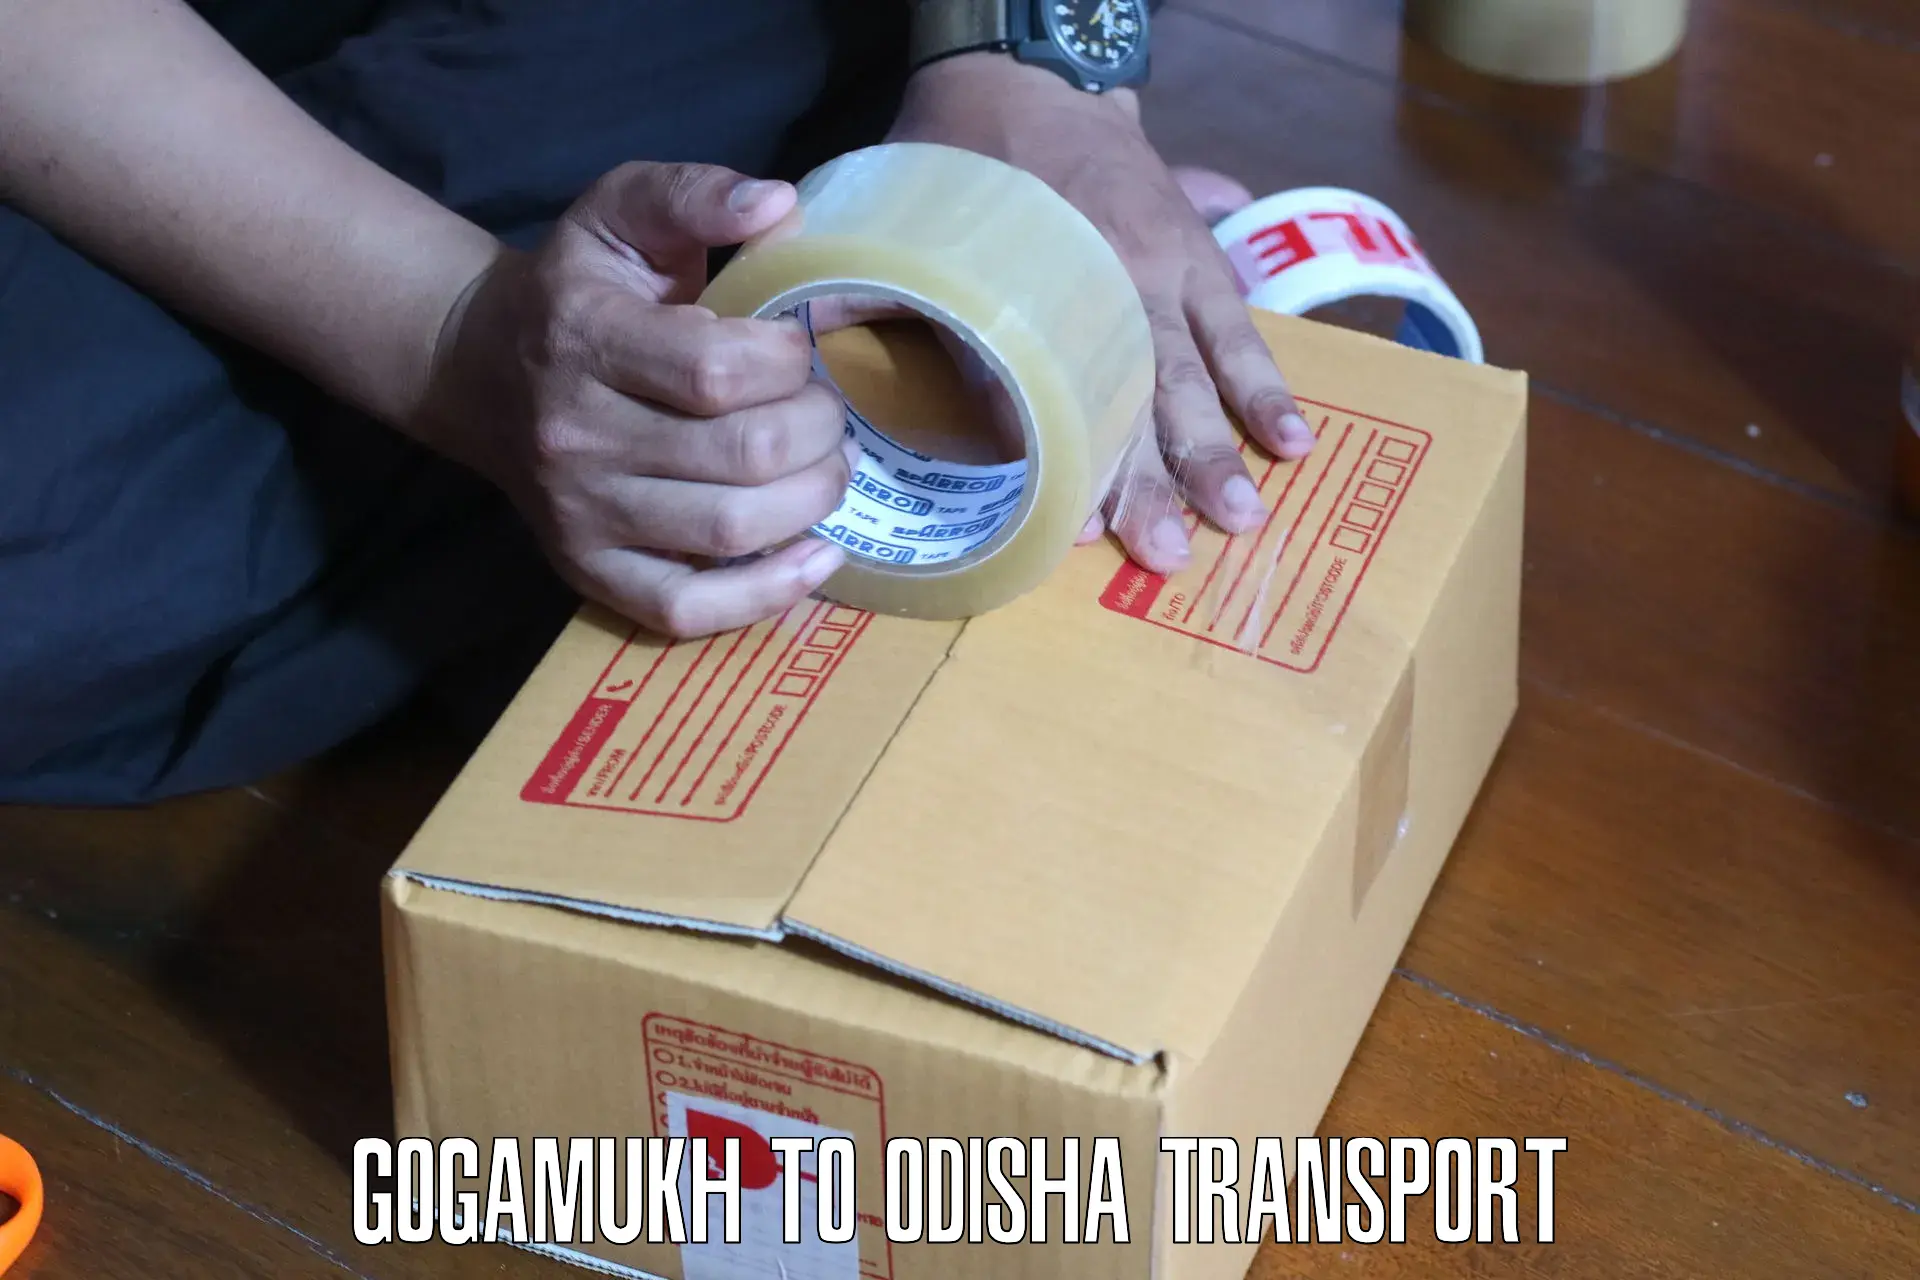 Daily transport service Gogamukh to Jaraka